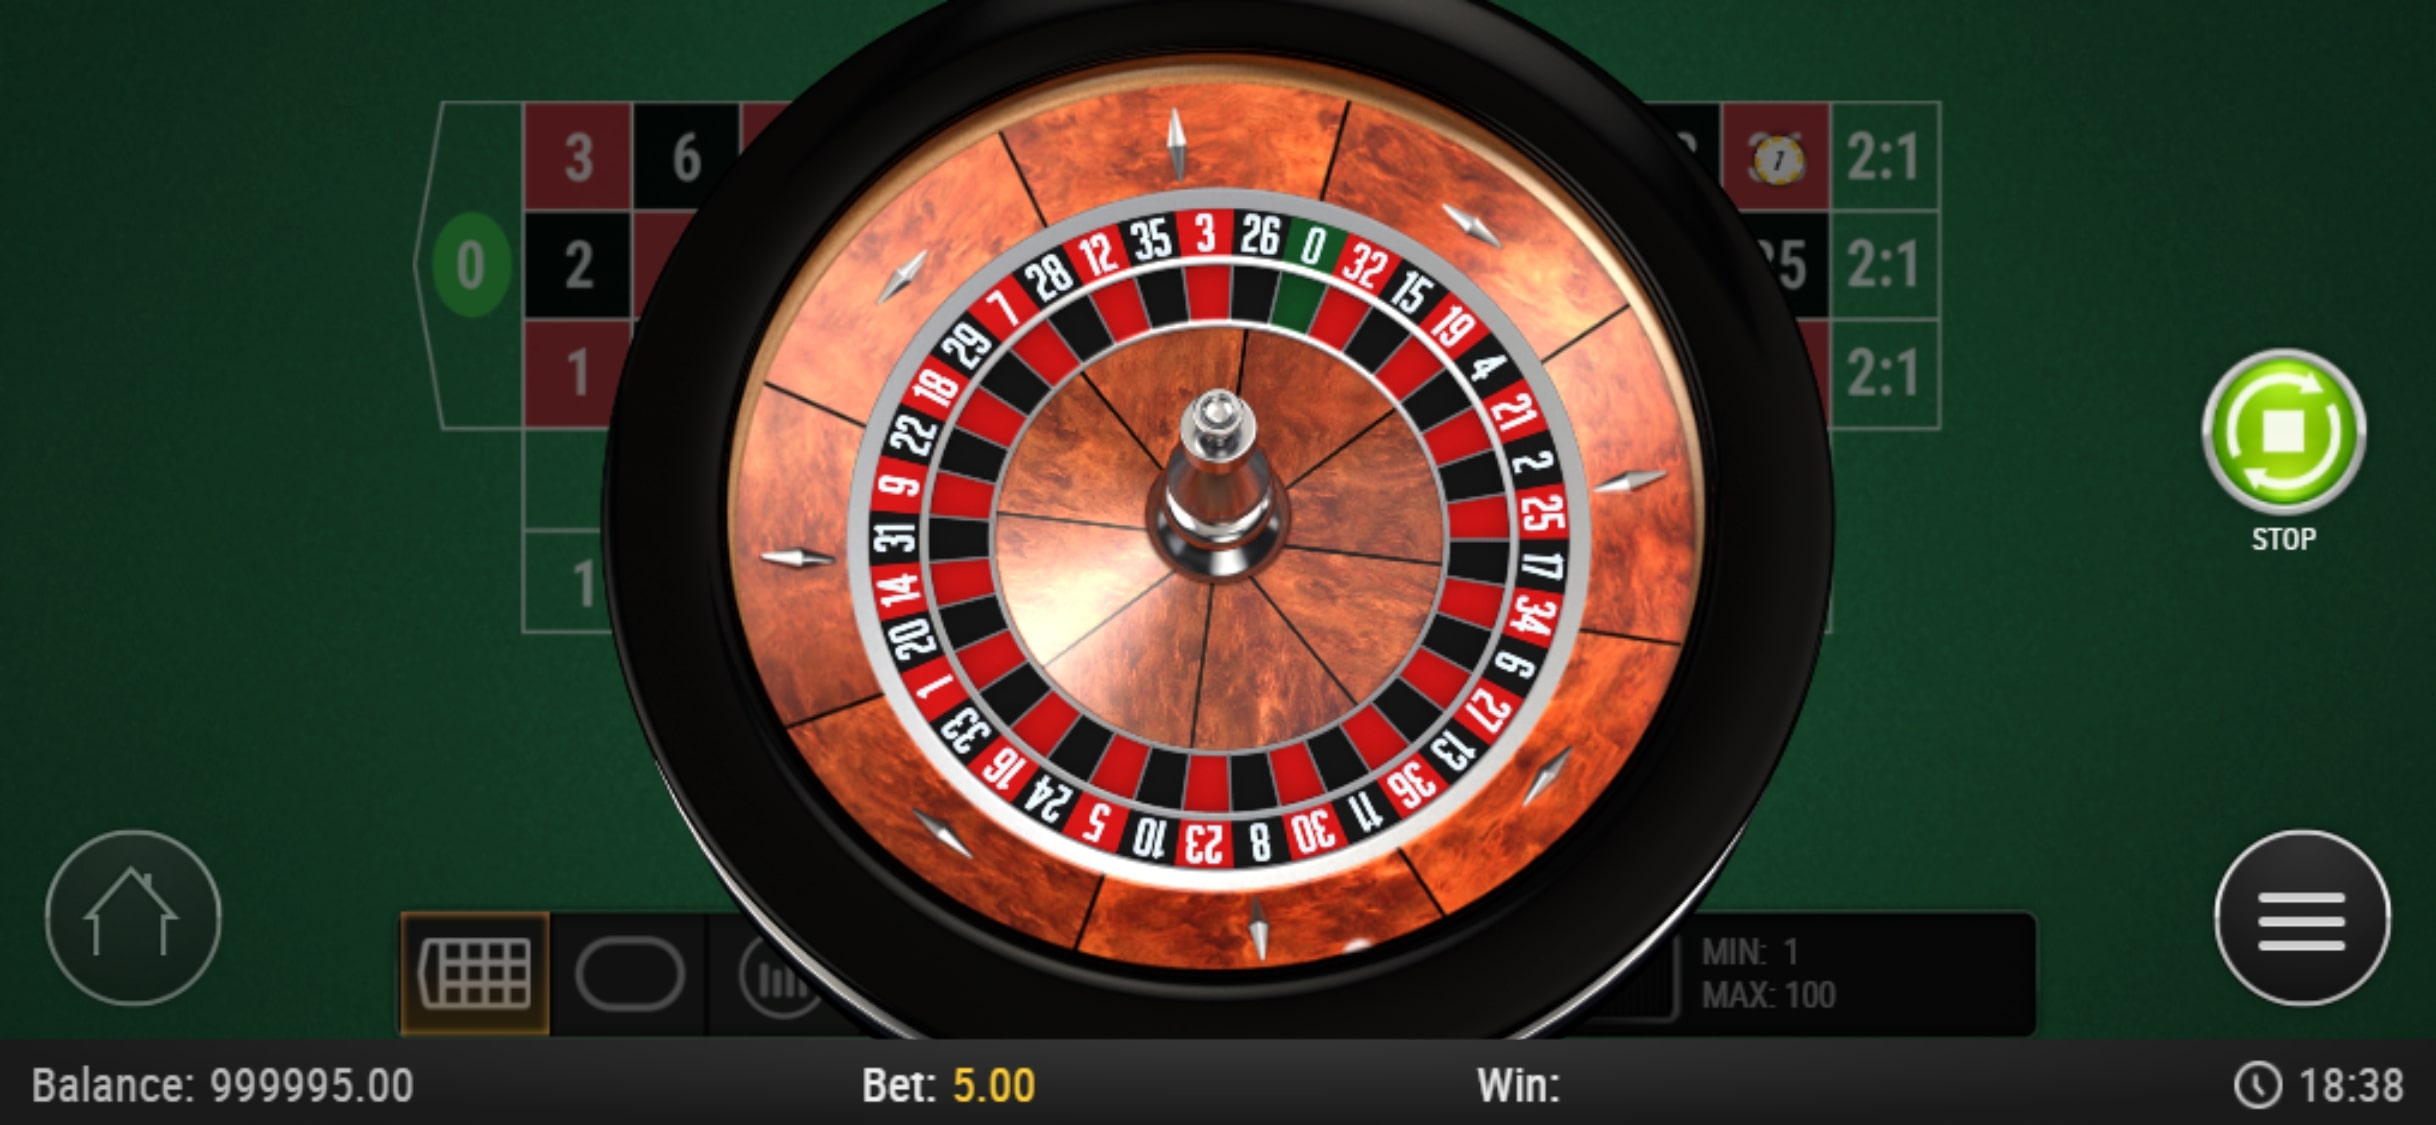 HighRoller Casino Mobile Casino Games Review